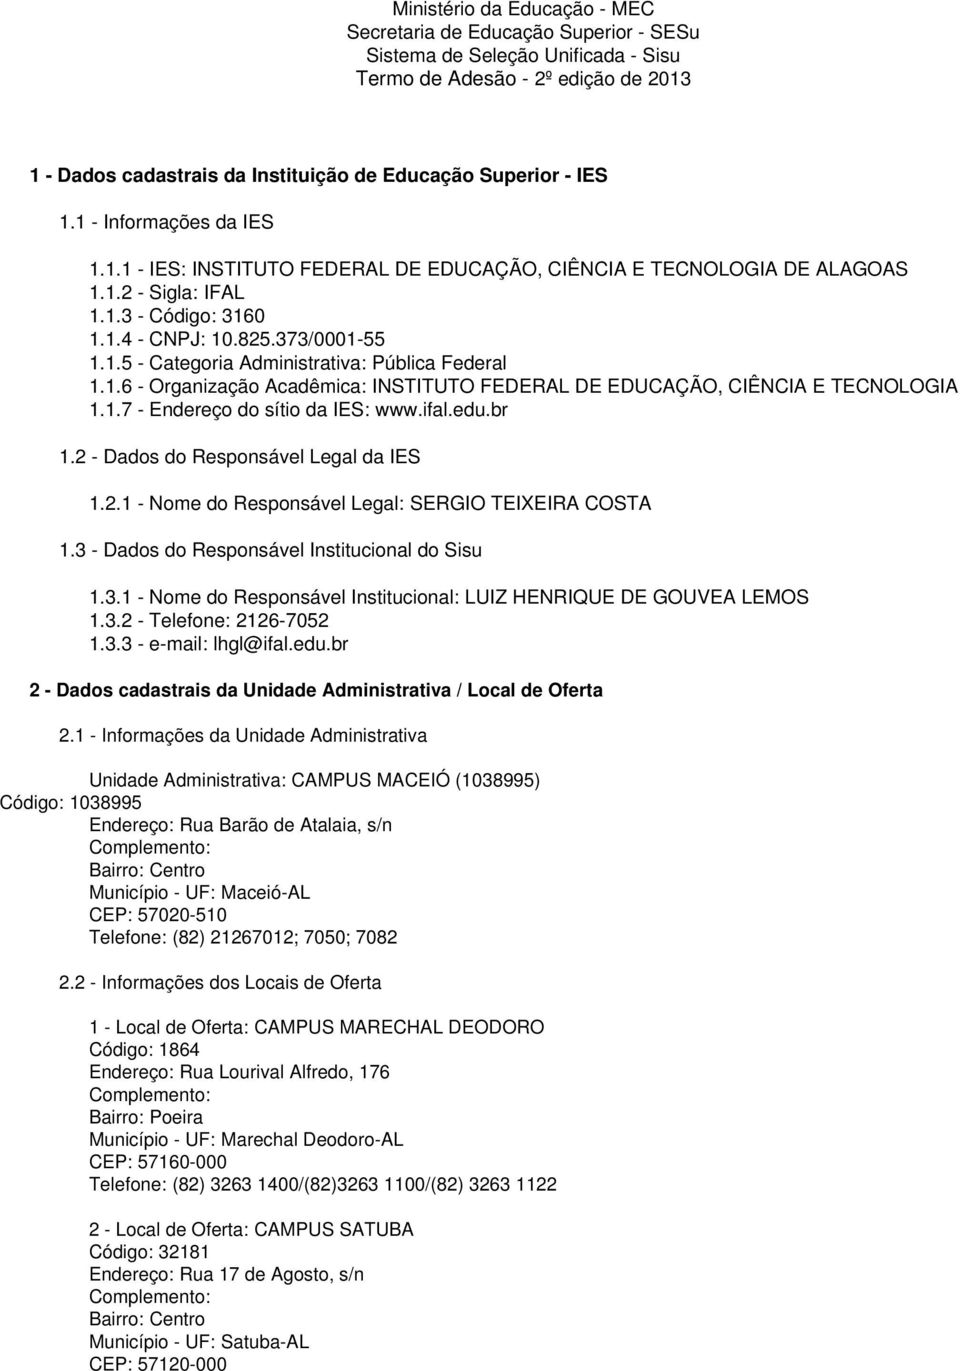 1.6 - Organização Acadêmica: INSTITUTO FEDERAL DE EDUCAÇÃO, CIÊNCIA E TECNOLOGIA 1.1.7 - Endereço do sítio da IES: www.ifal.edu.br 1.2 - Dados do Responsável Legal da IES 1.2.1 - Nome do Responsável Legal: SERGIO TEIXEIRA COSTA 1.